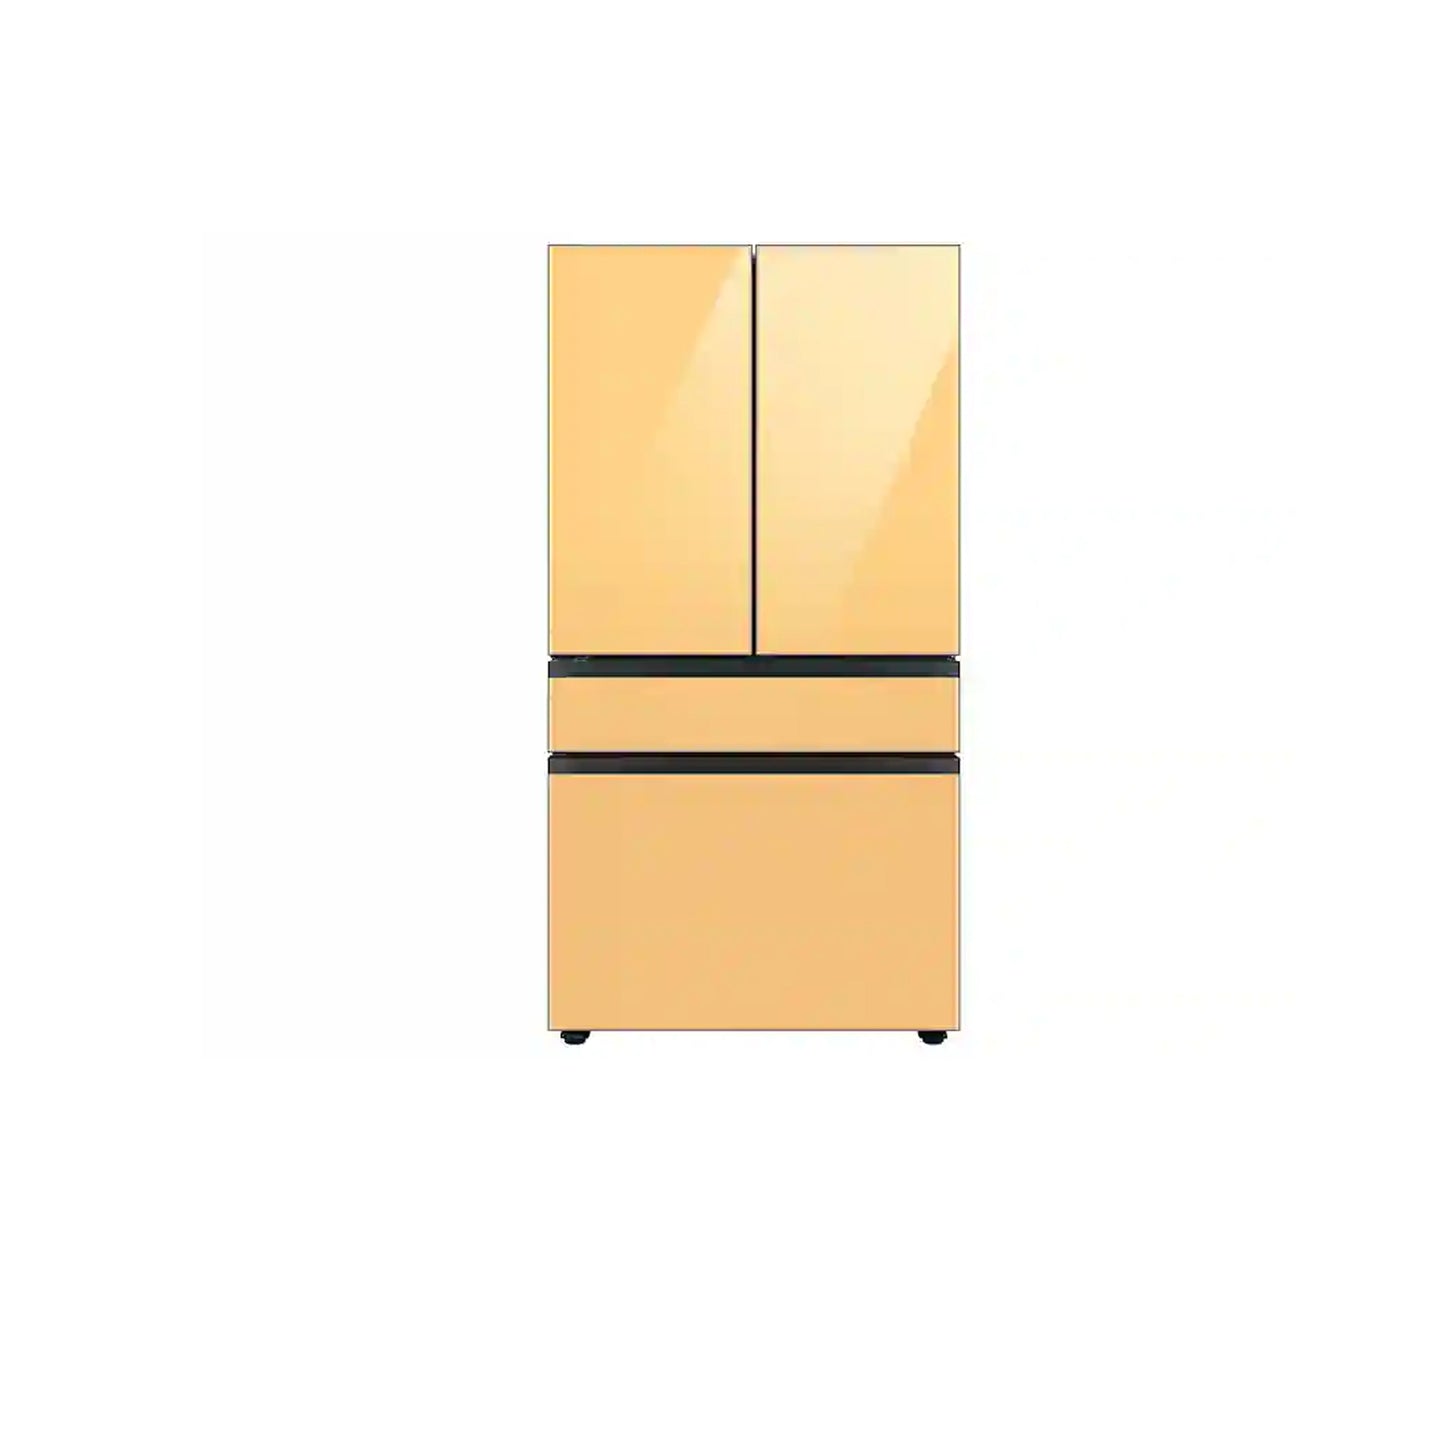 ثلاجة مخصصة بباب فرنسي بأربعة أبواب (23 قدمًا مكعبًا) مع ألوان لوحة الباب قابلة للتخصيص ومركز المشروبات ™ من الزجاج الوردي الوردي. 